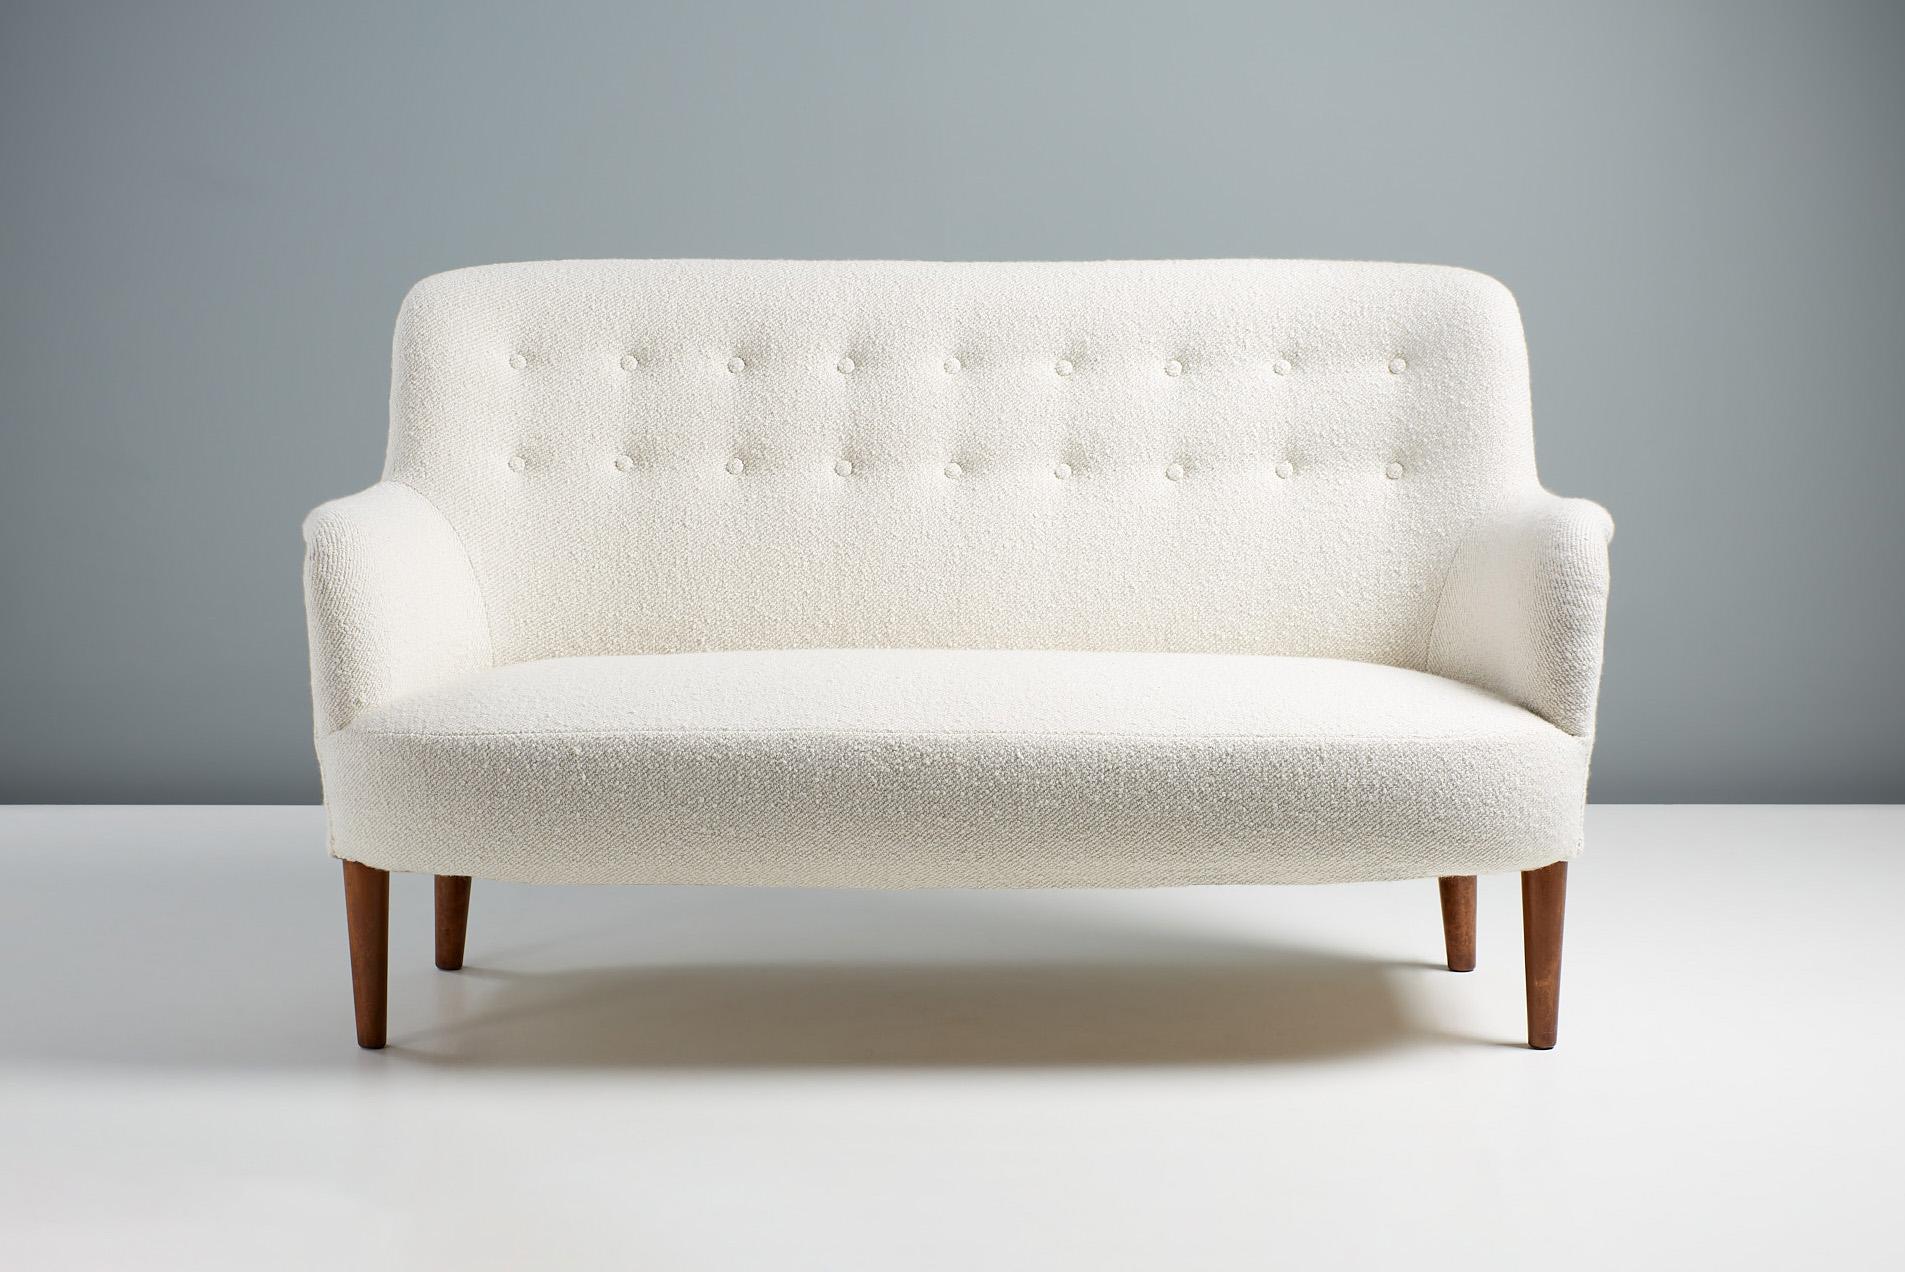 Carl Malmsten - Sofa, um 1950.

Kleines Sofa, das in den 1950er Jahren vom schwedischen Meisterdesigner Carl Malmsten entworfen und von seinem eigenen Unternehmen in Schweden hergestellt wurde. Das Sofa wurde restauriert und mit geölten